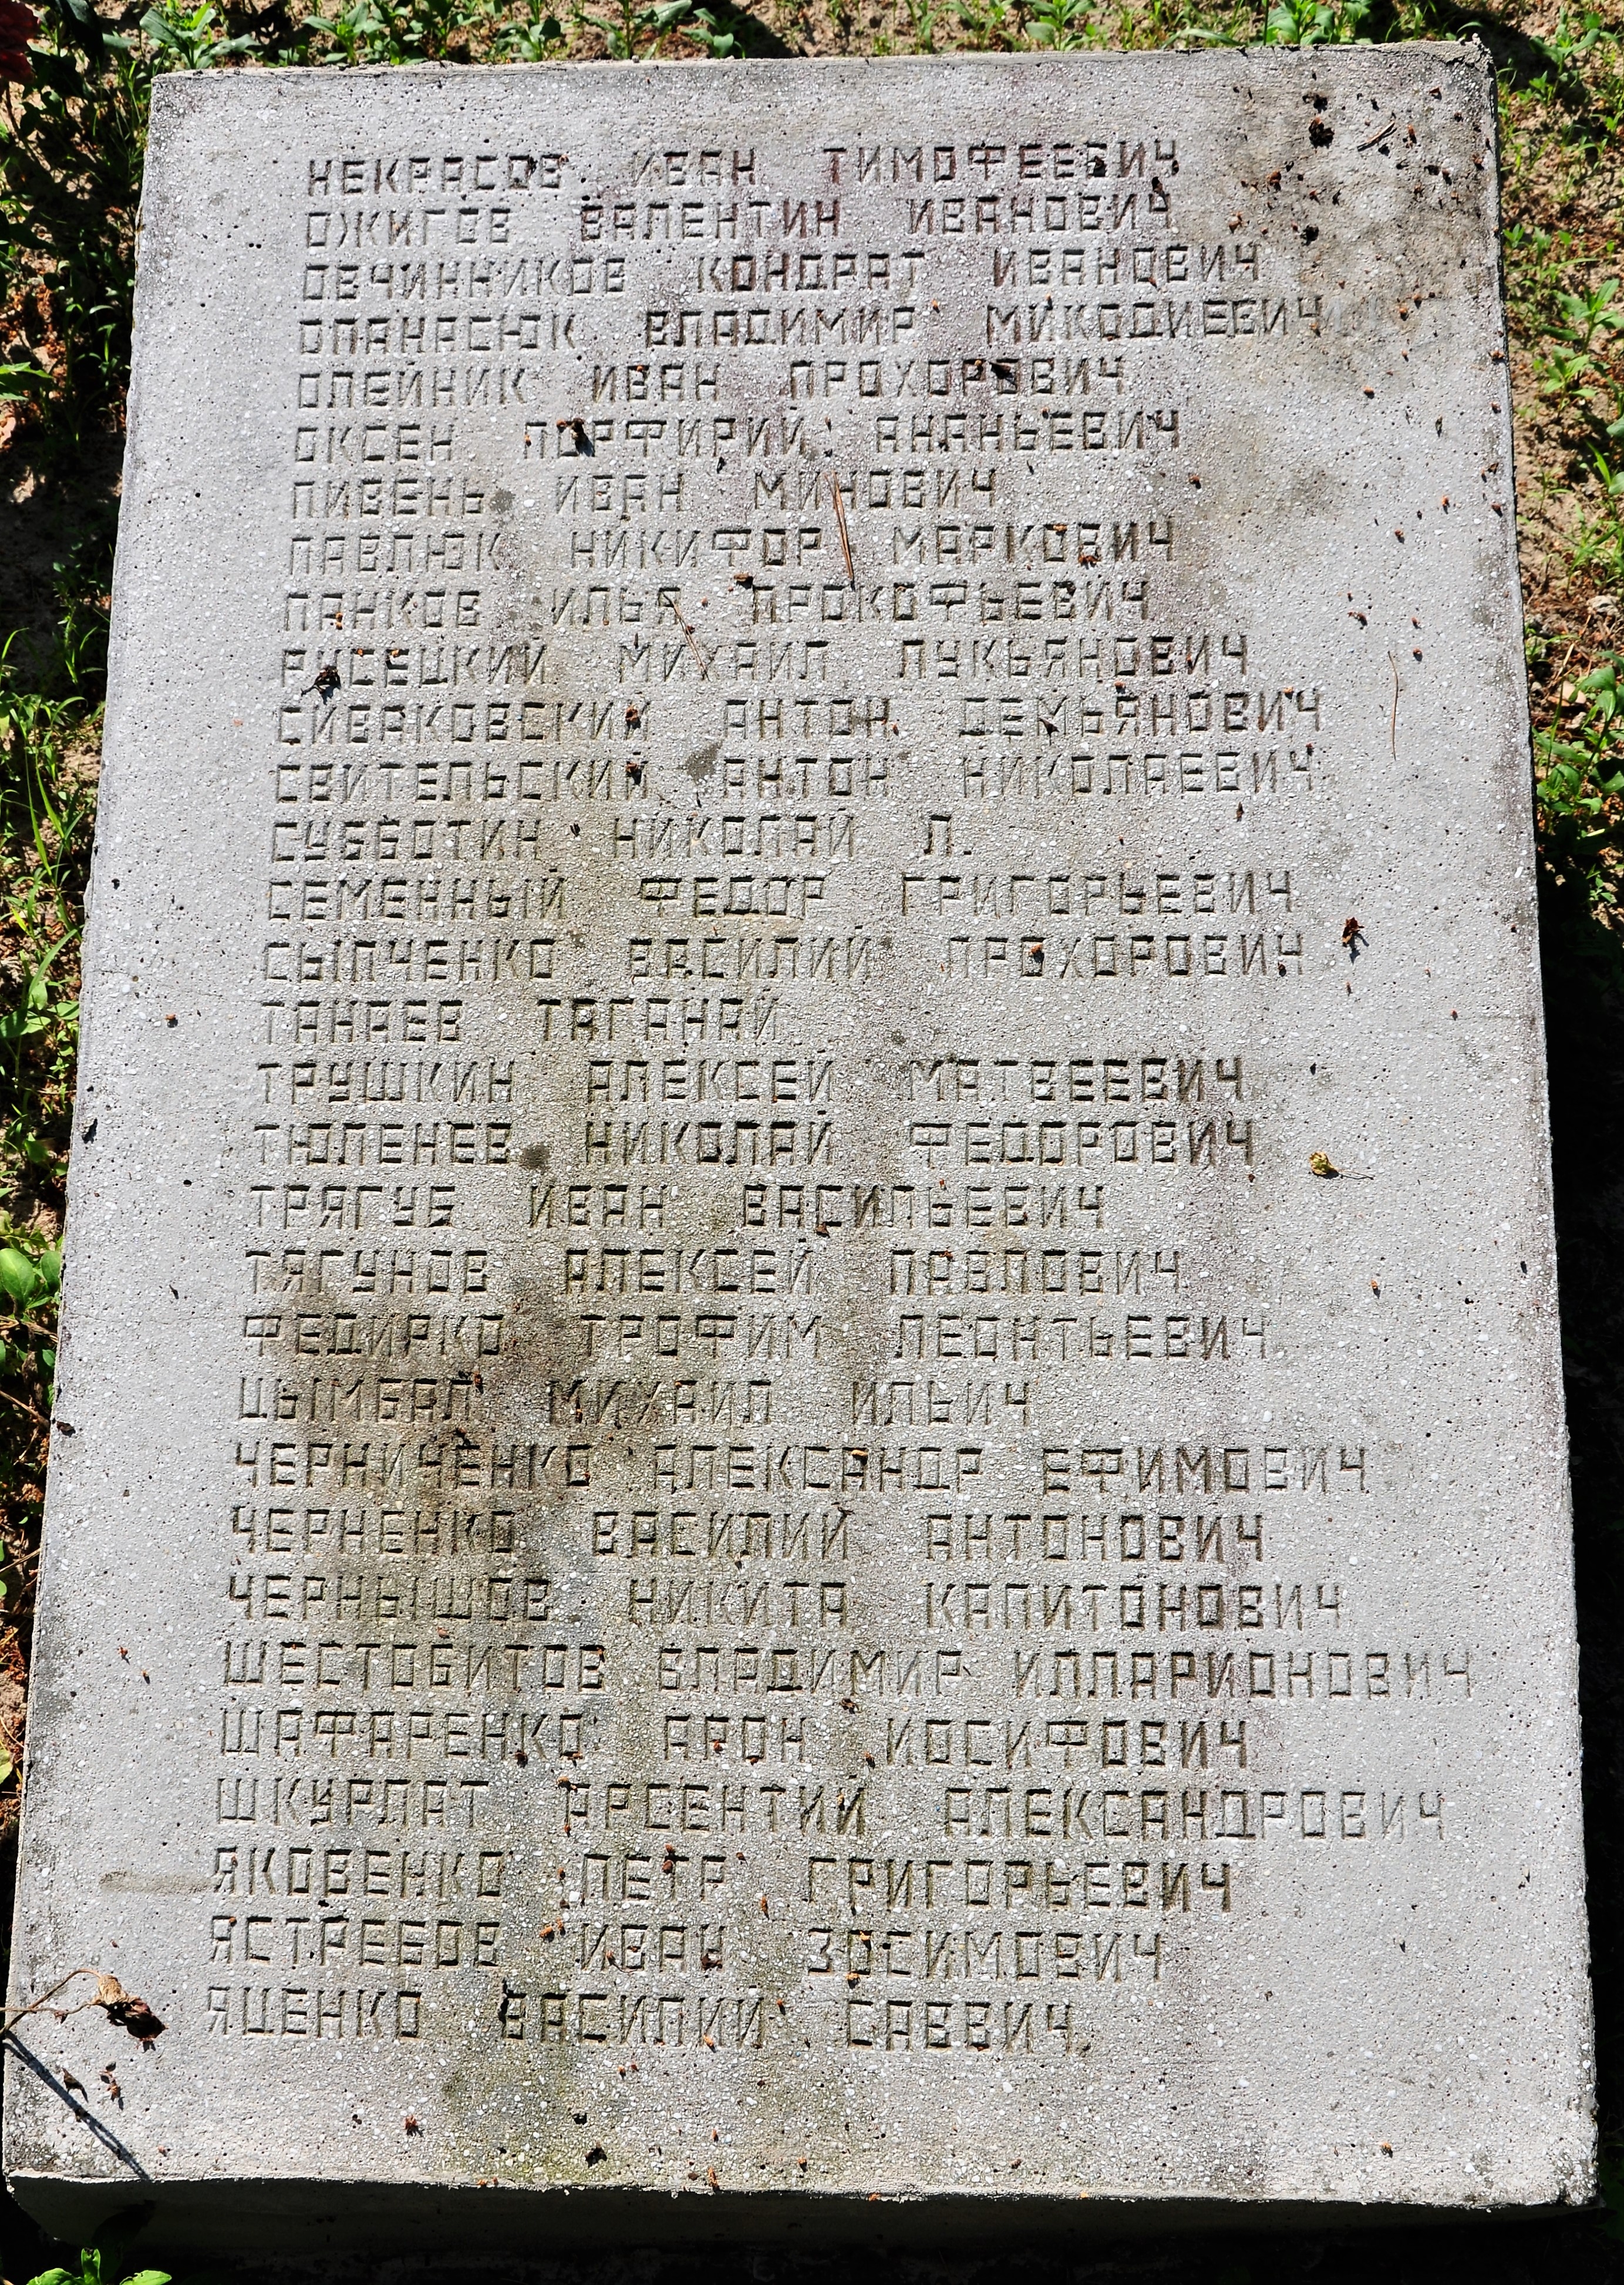 Братская могила на кладбище с. Стремигород Коростенского района